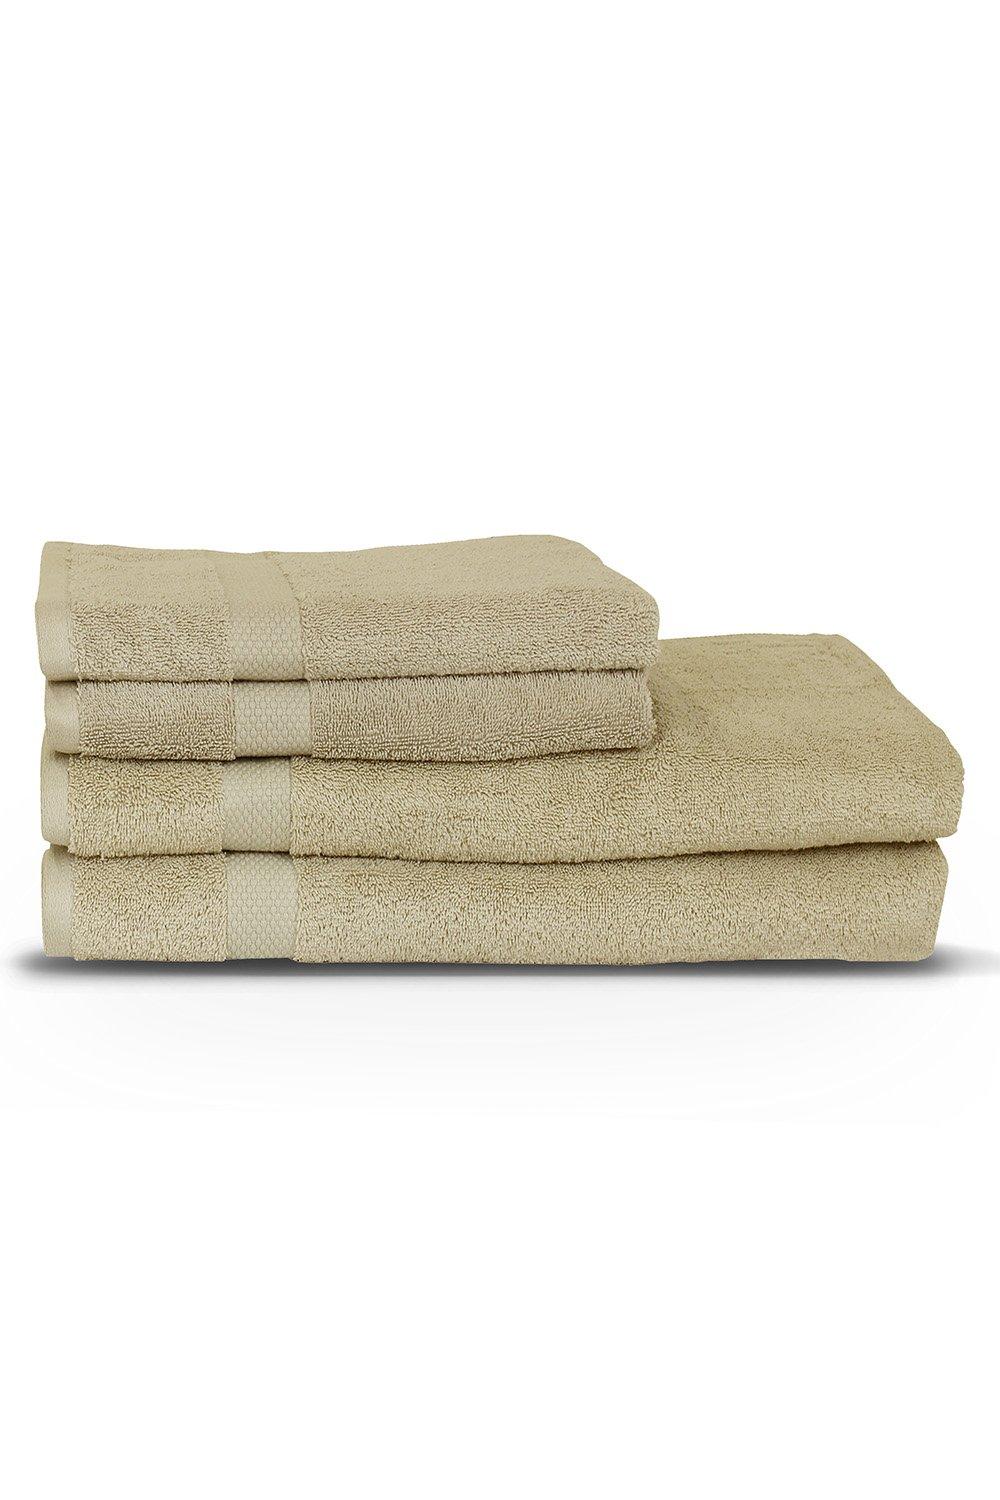 Loft Combed Cotton 4-Piece Towel Bale